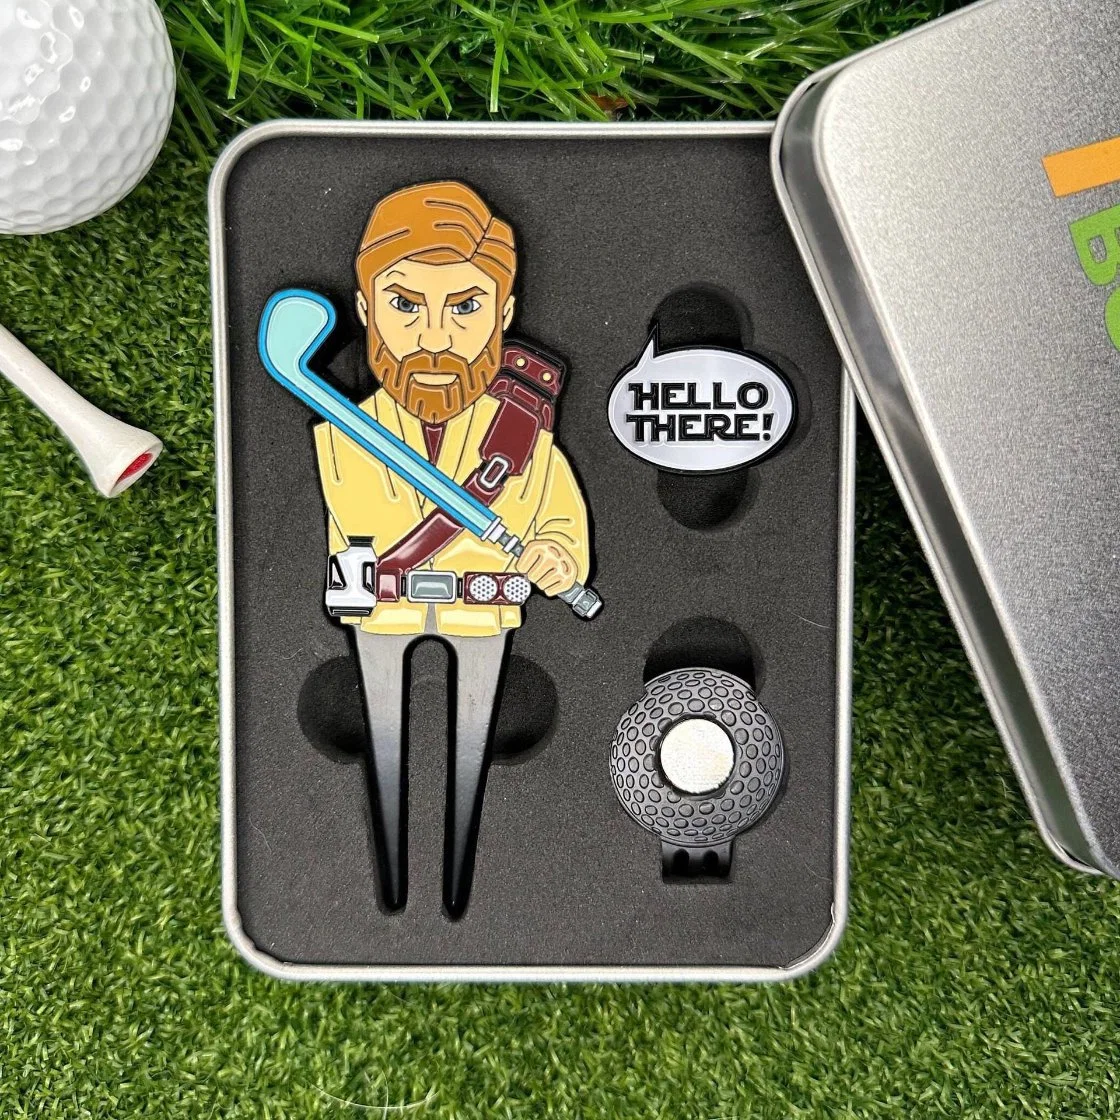 Golf Ball Lawn Tool with Metal Box Creative Fun Ball Marker